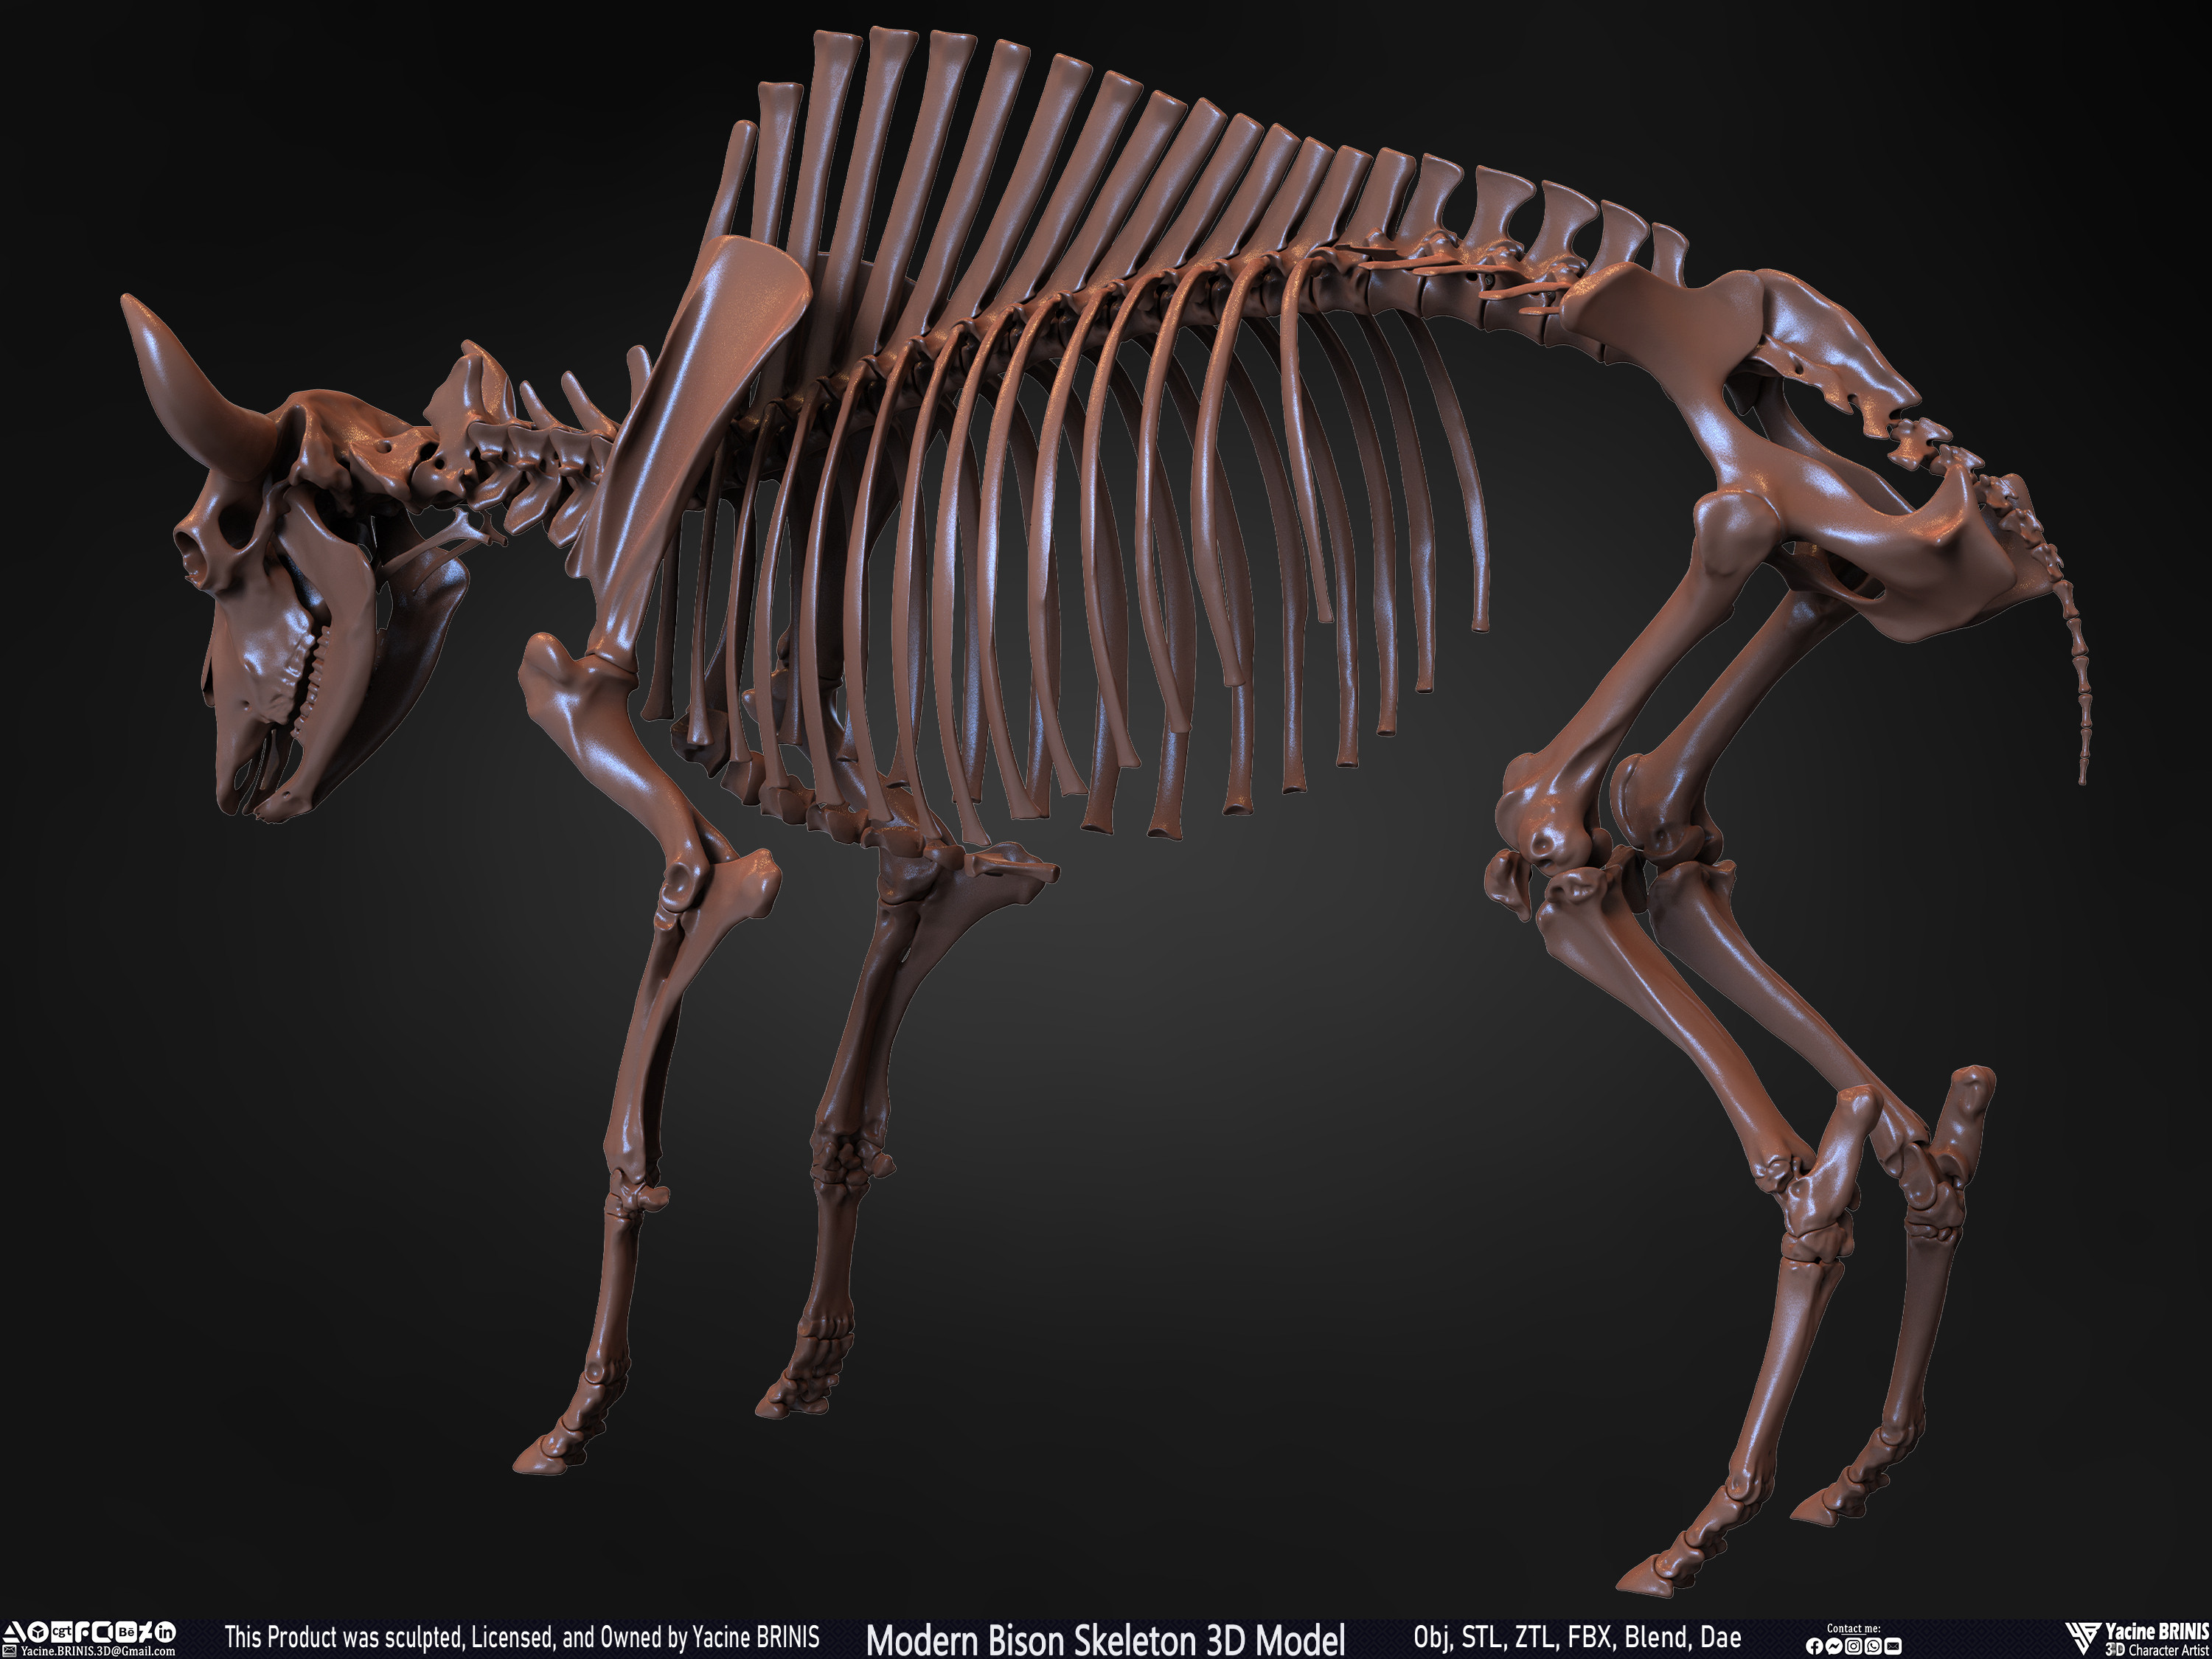 Modern Bison Skeleton 3D Model Sculpted by Yacine BRINIS Set 020